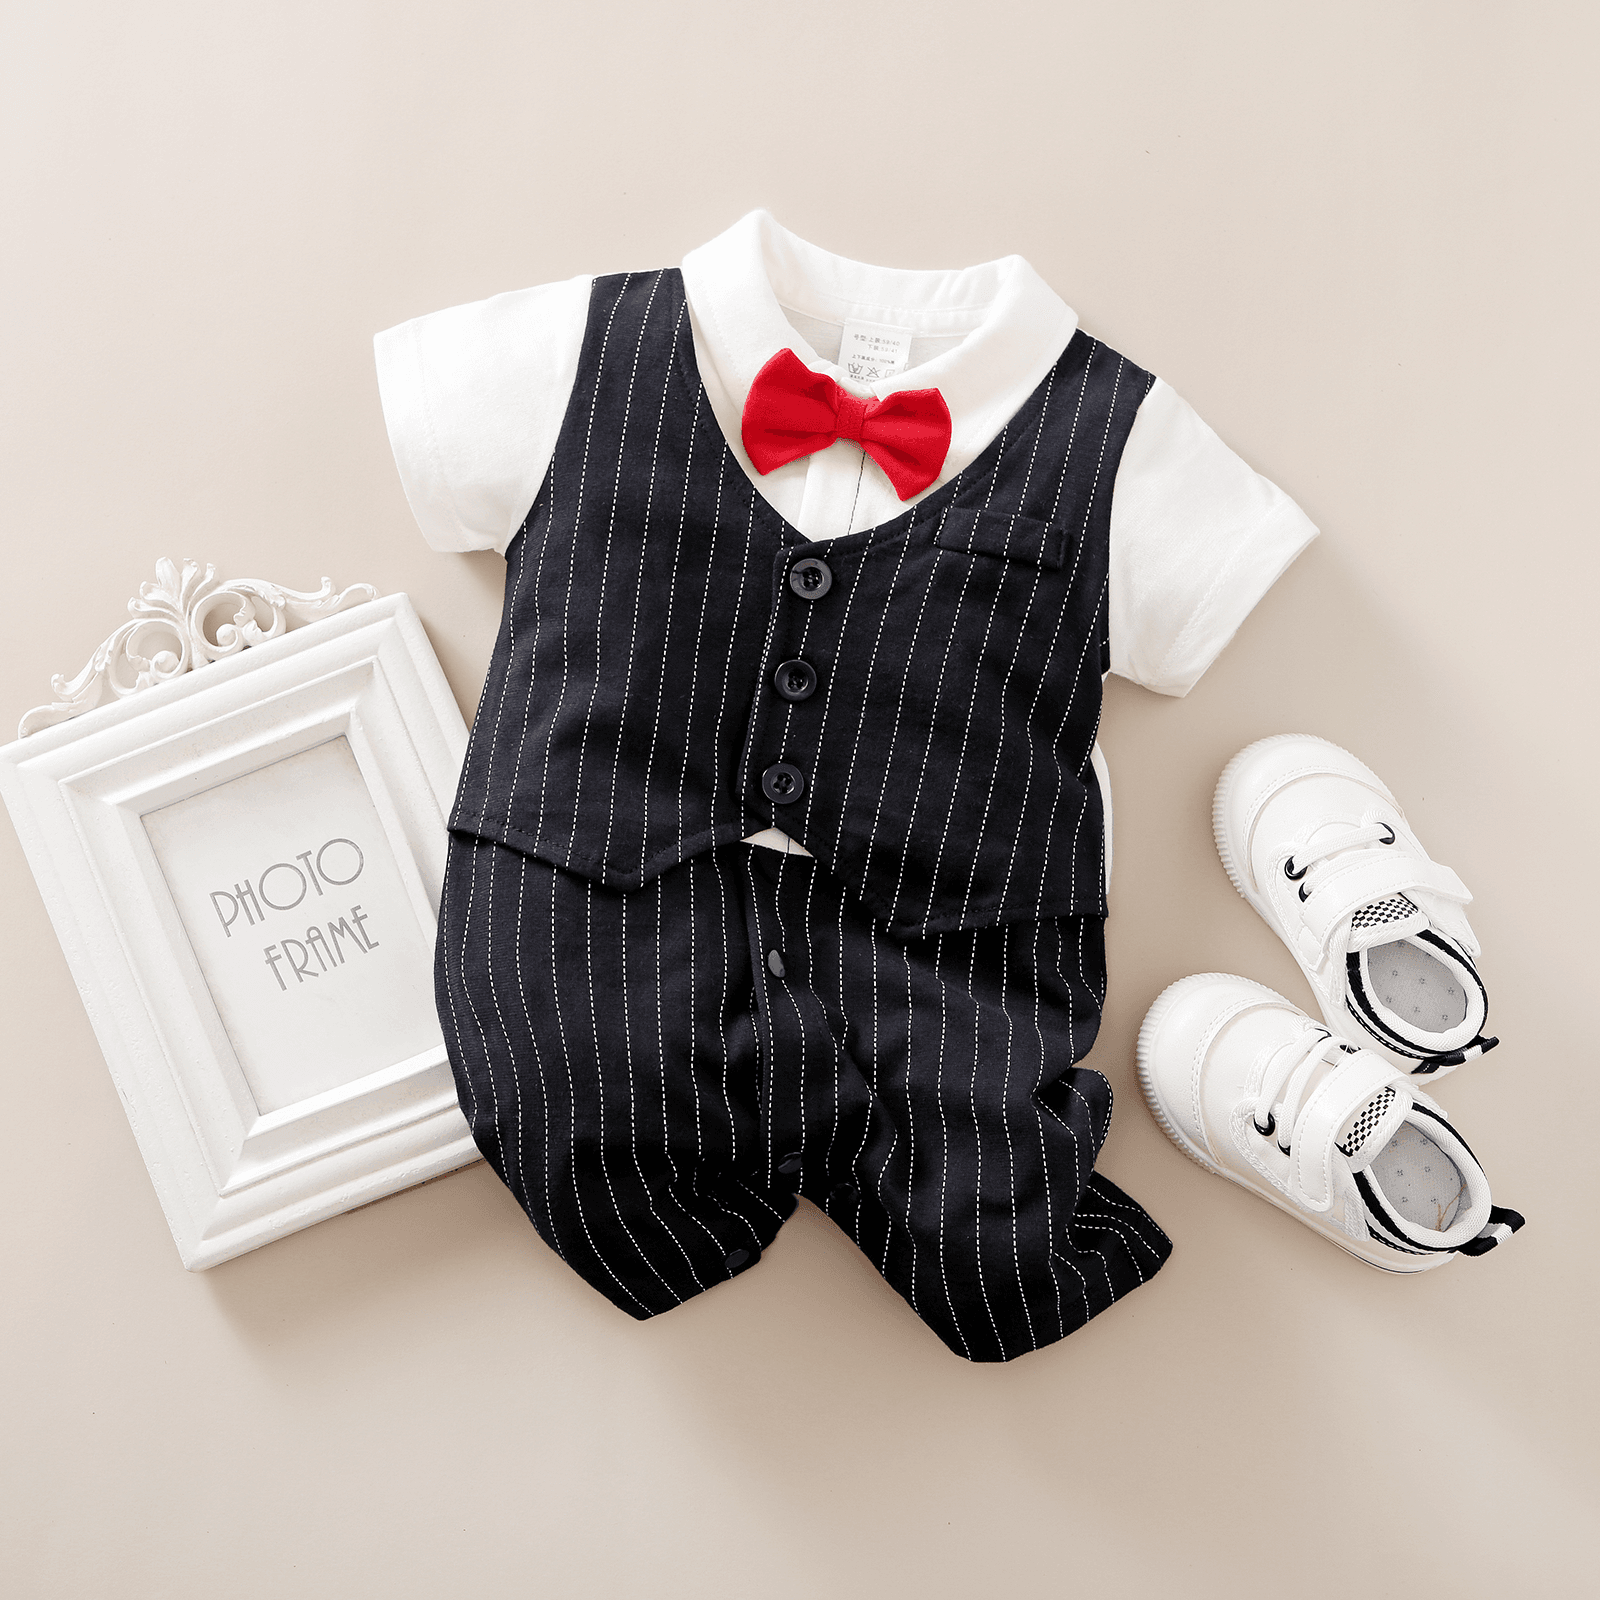 2pcs Baby Boy Cotton Classic Stripe Short Sleeve Lapel Jumpsuit